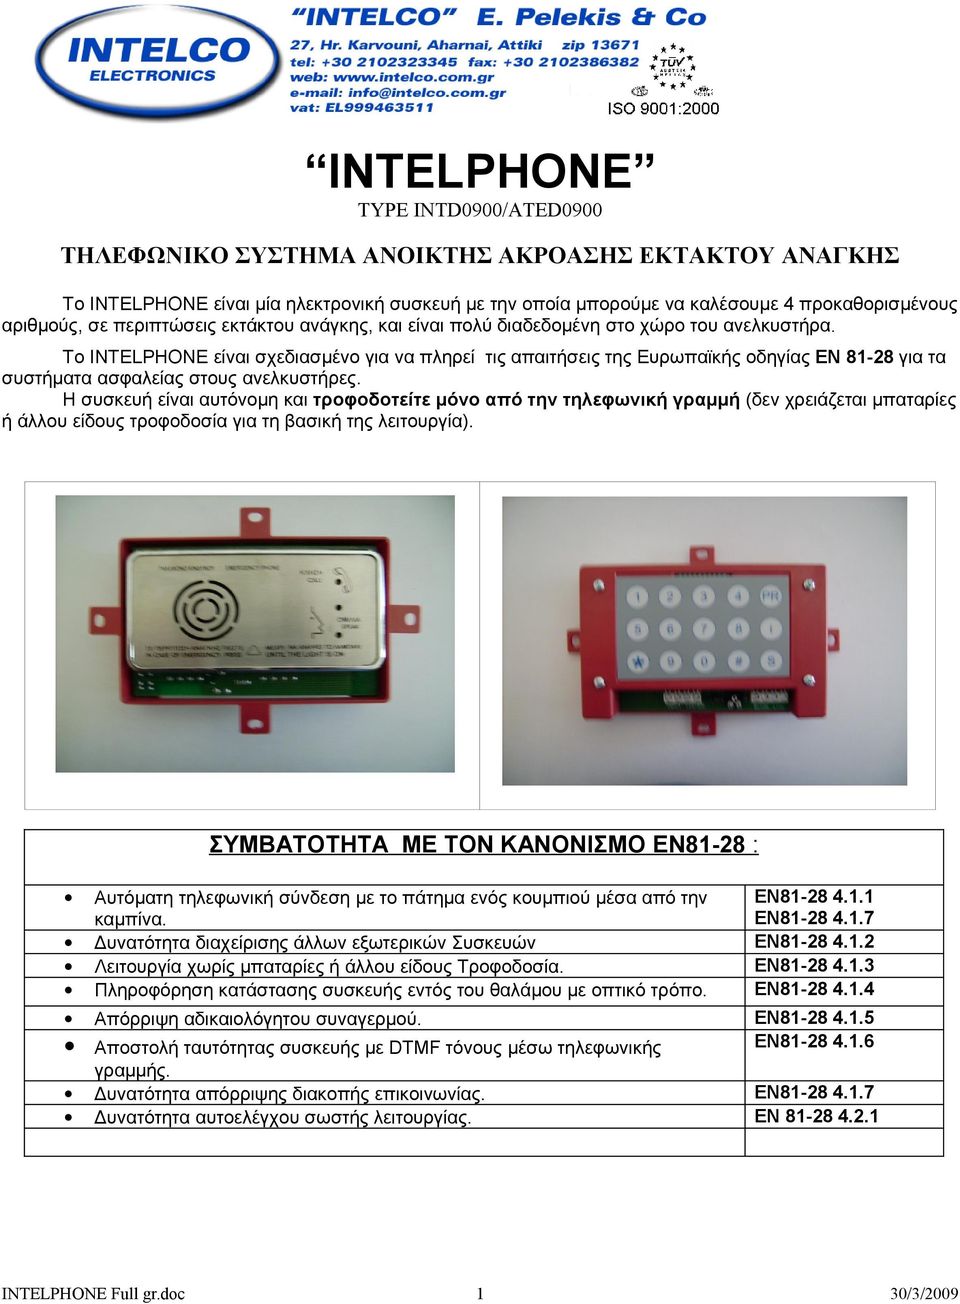 Το INTELPHONE είναι σχεδιασμένο για να πληρεί τις απαιτήσεις της Ευρωπαϊκής οδηγίας EN 81-28 για τα συστήματα ασφαλείας στους ανελκυστήρες.